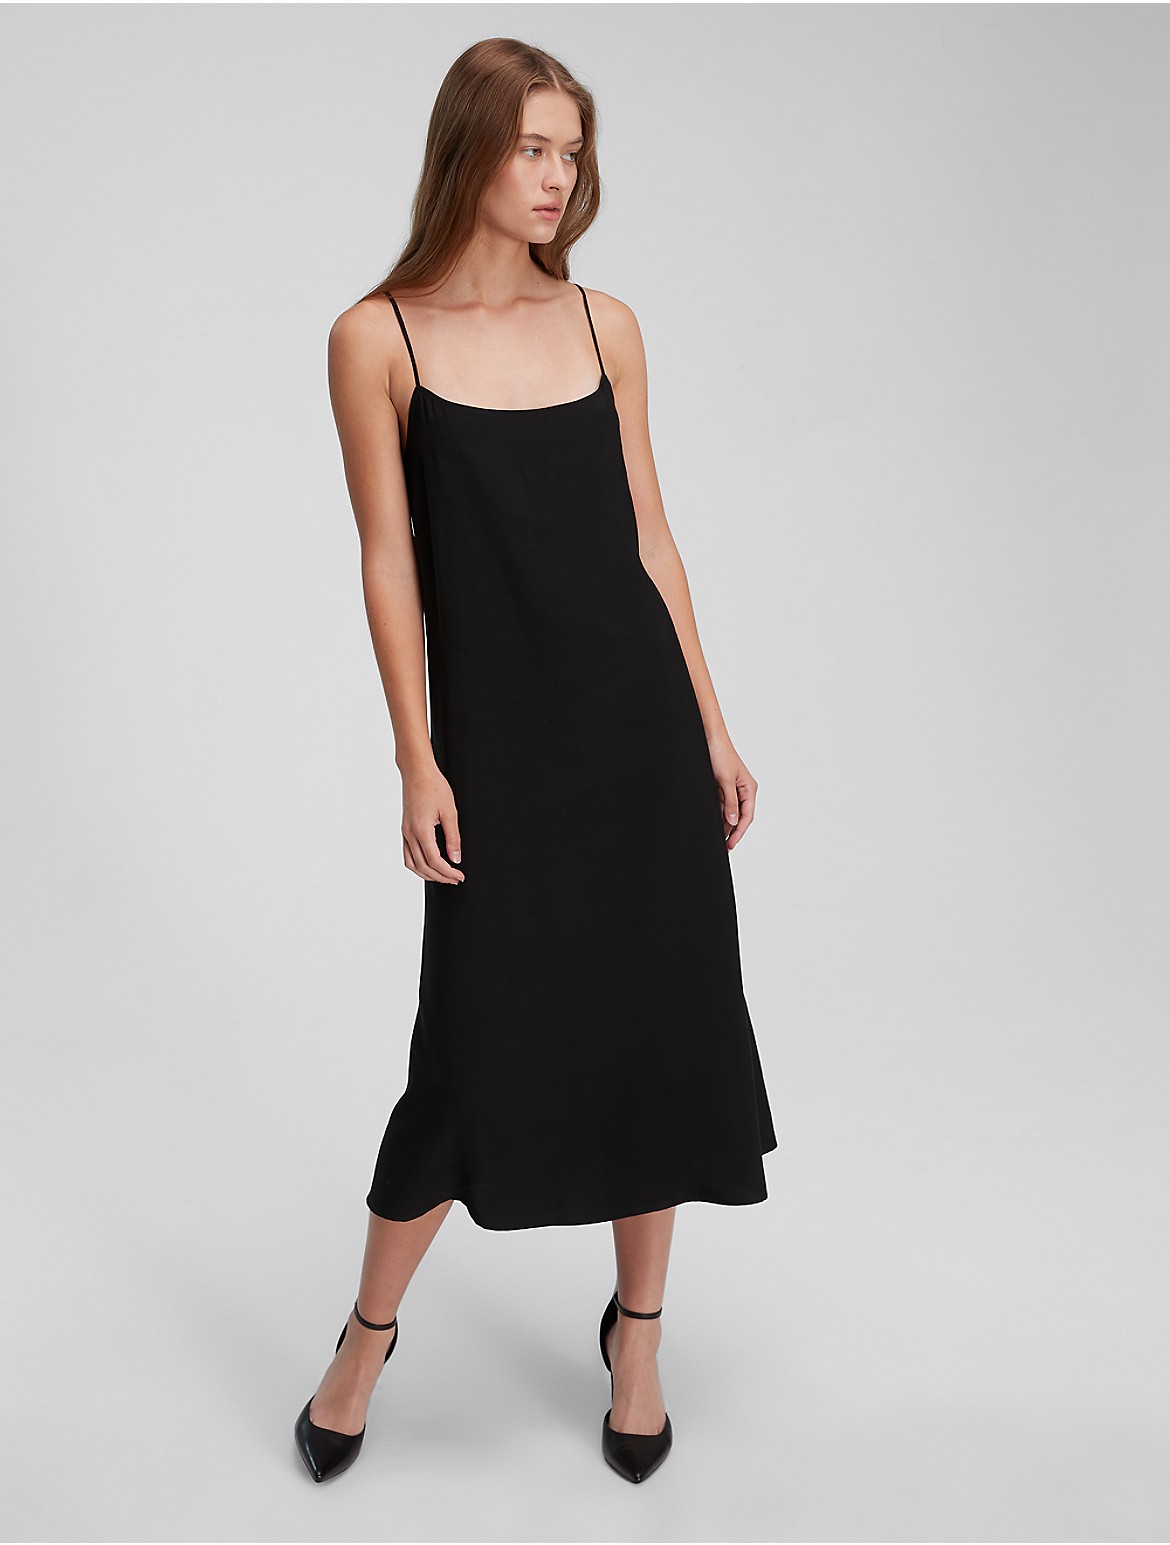 Calvin Klein Women's Soft Twill Dress - Black - S